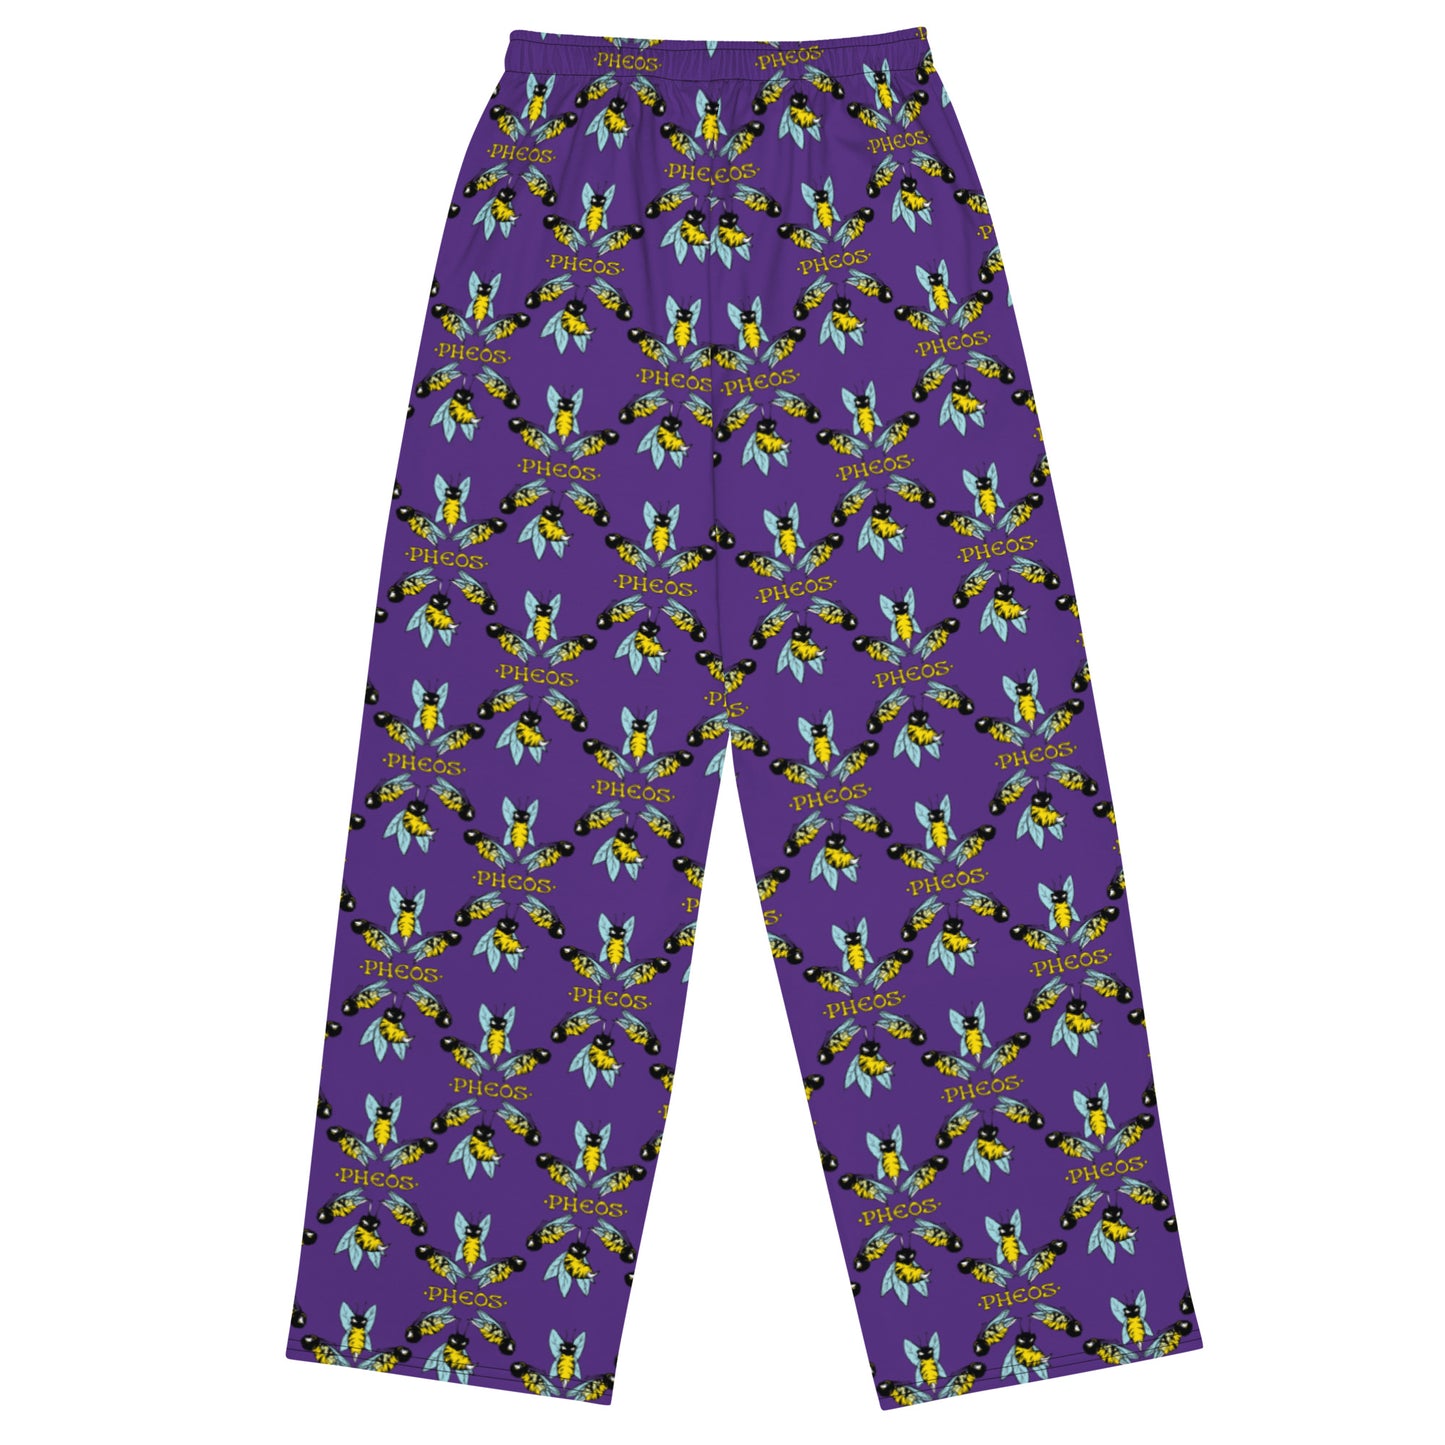 Purple Peez wide-leg pants